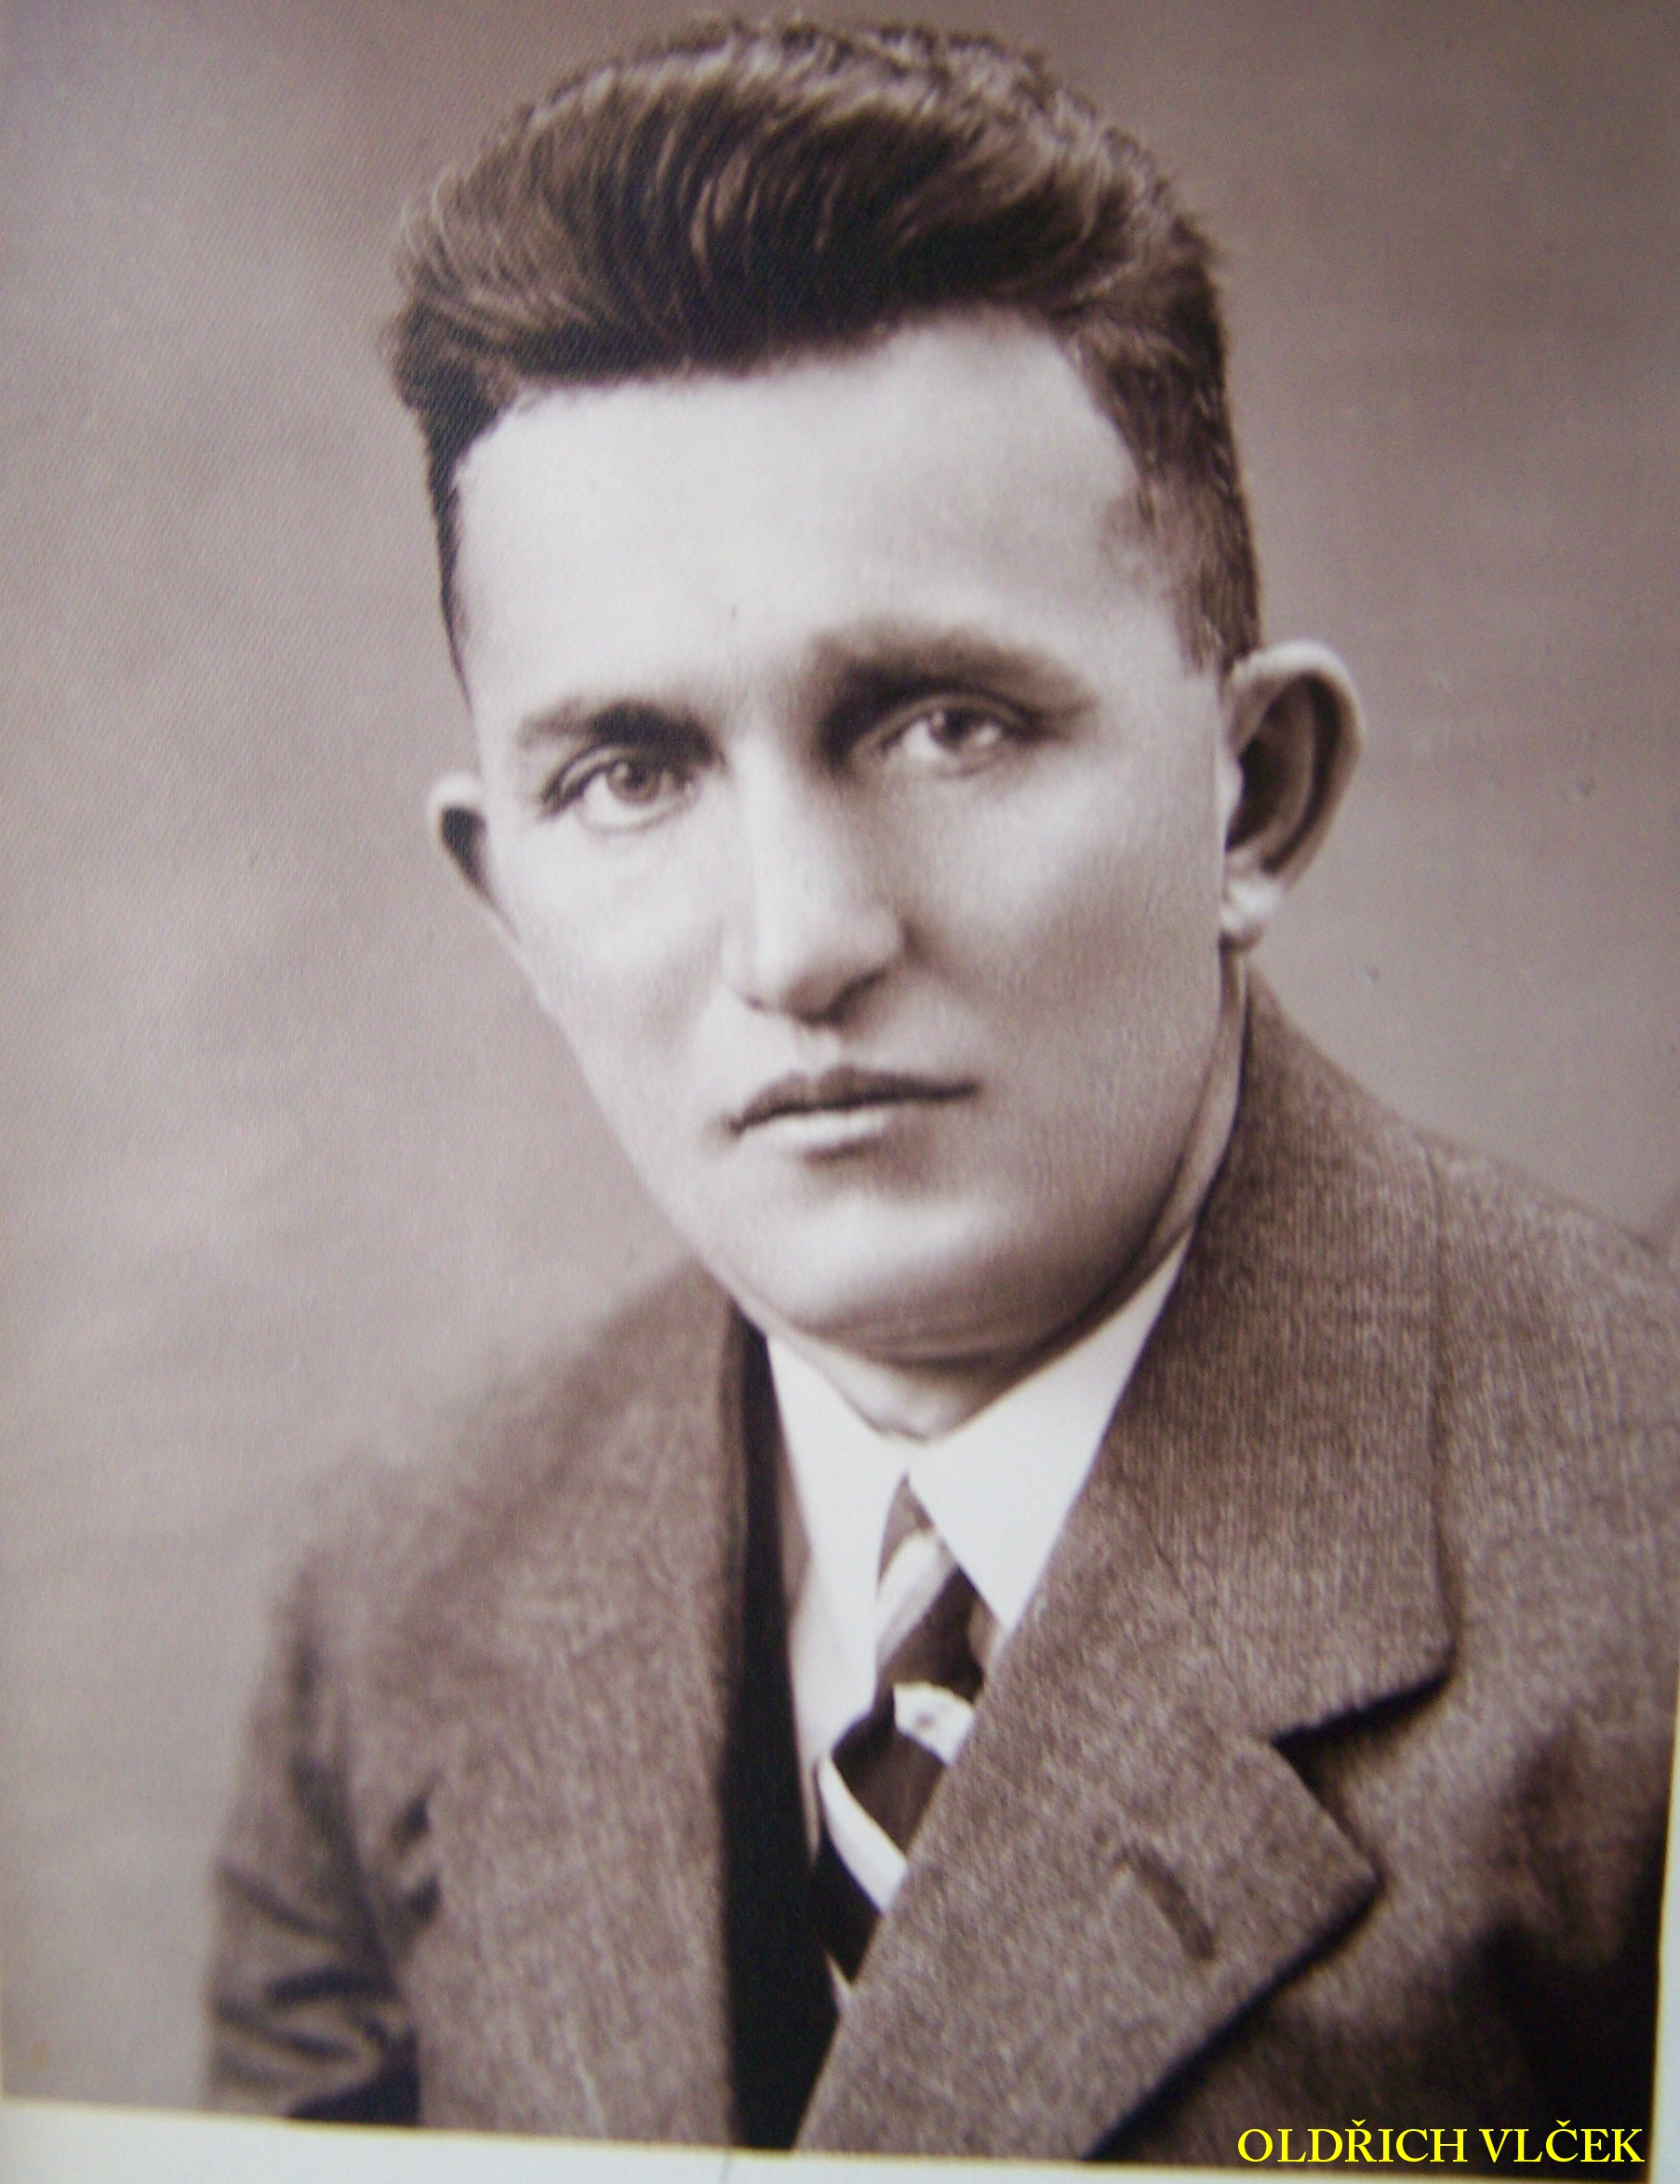 Oldřich Vlček